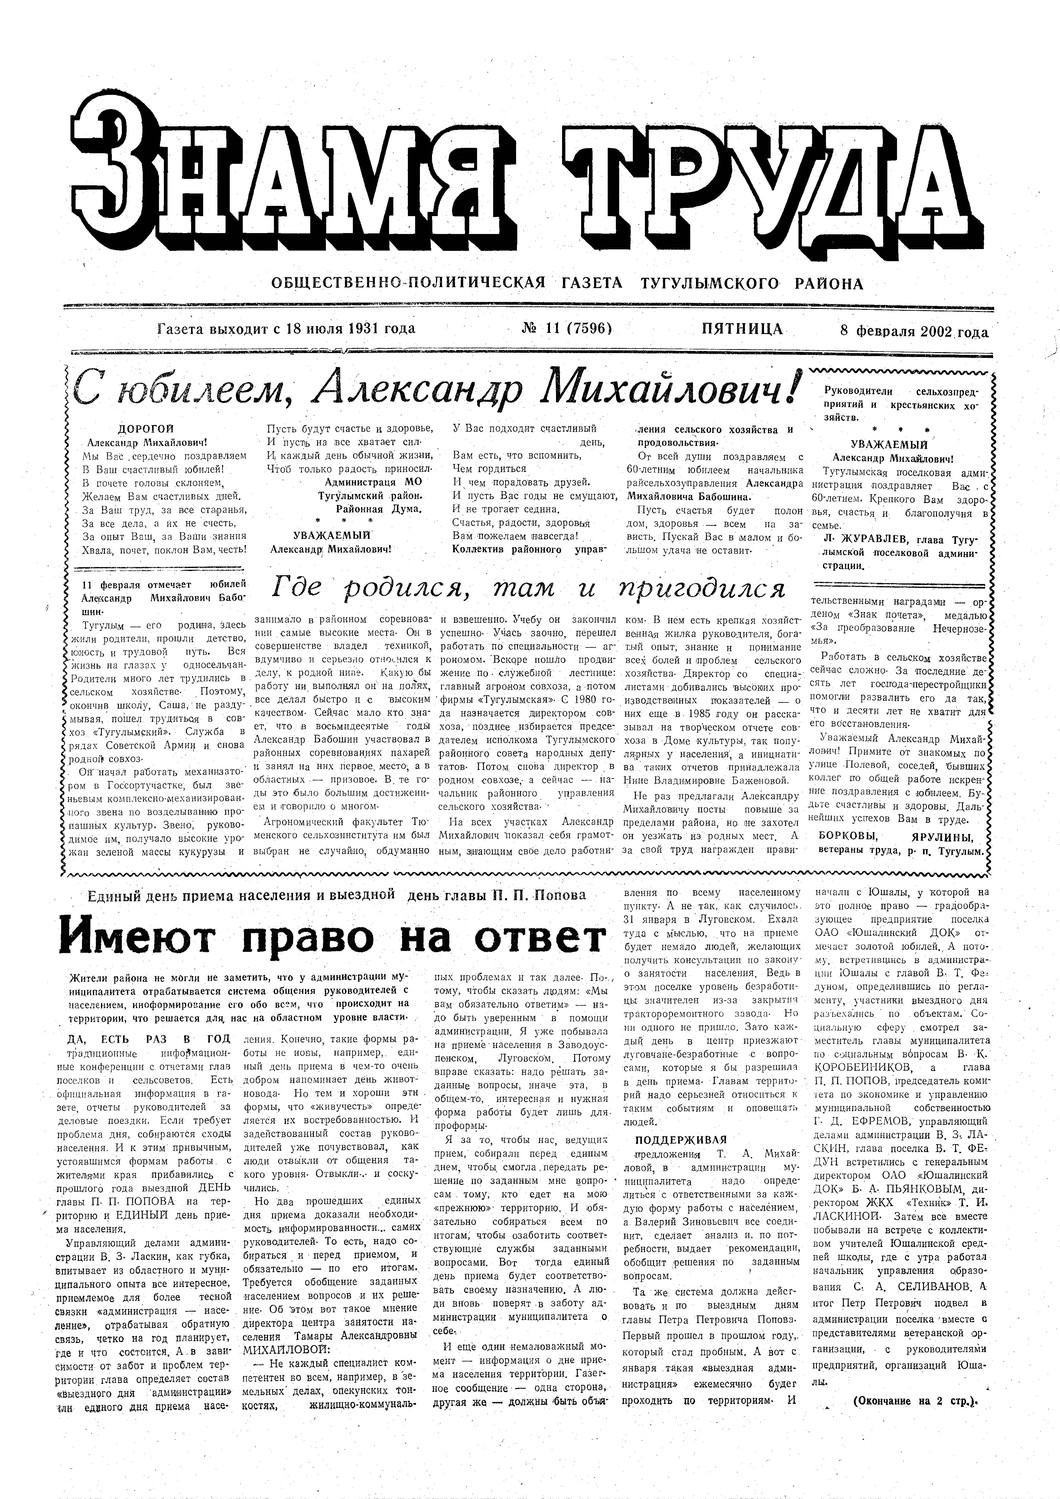 Знамя труда №11 от 8 февраля 2002г.